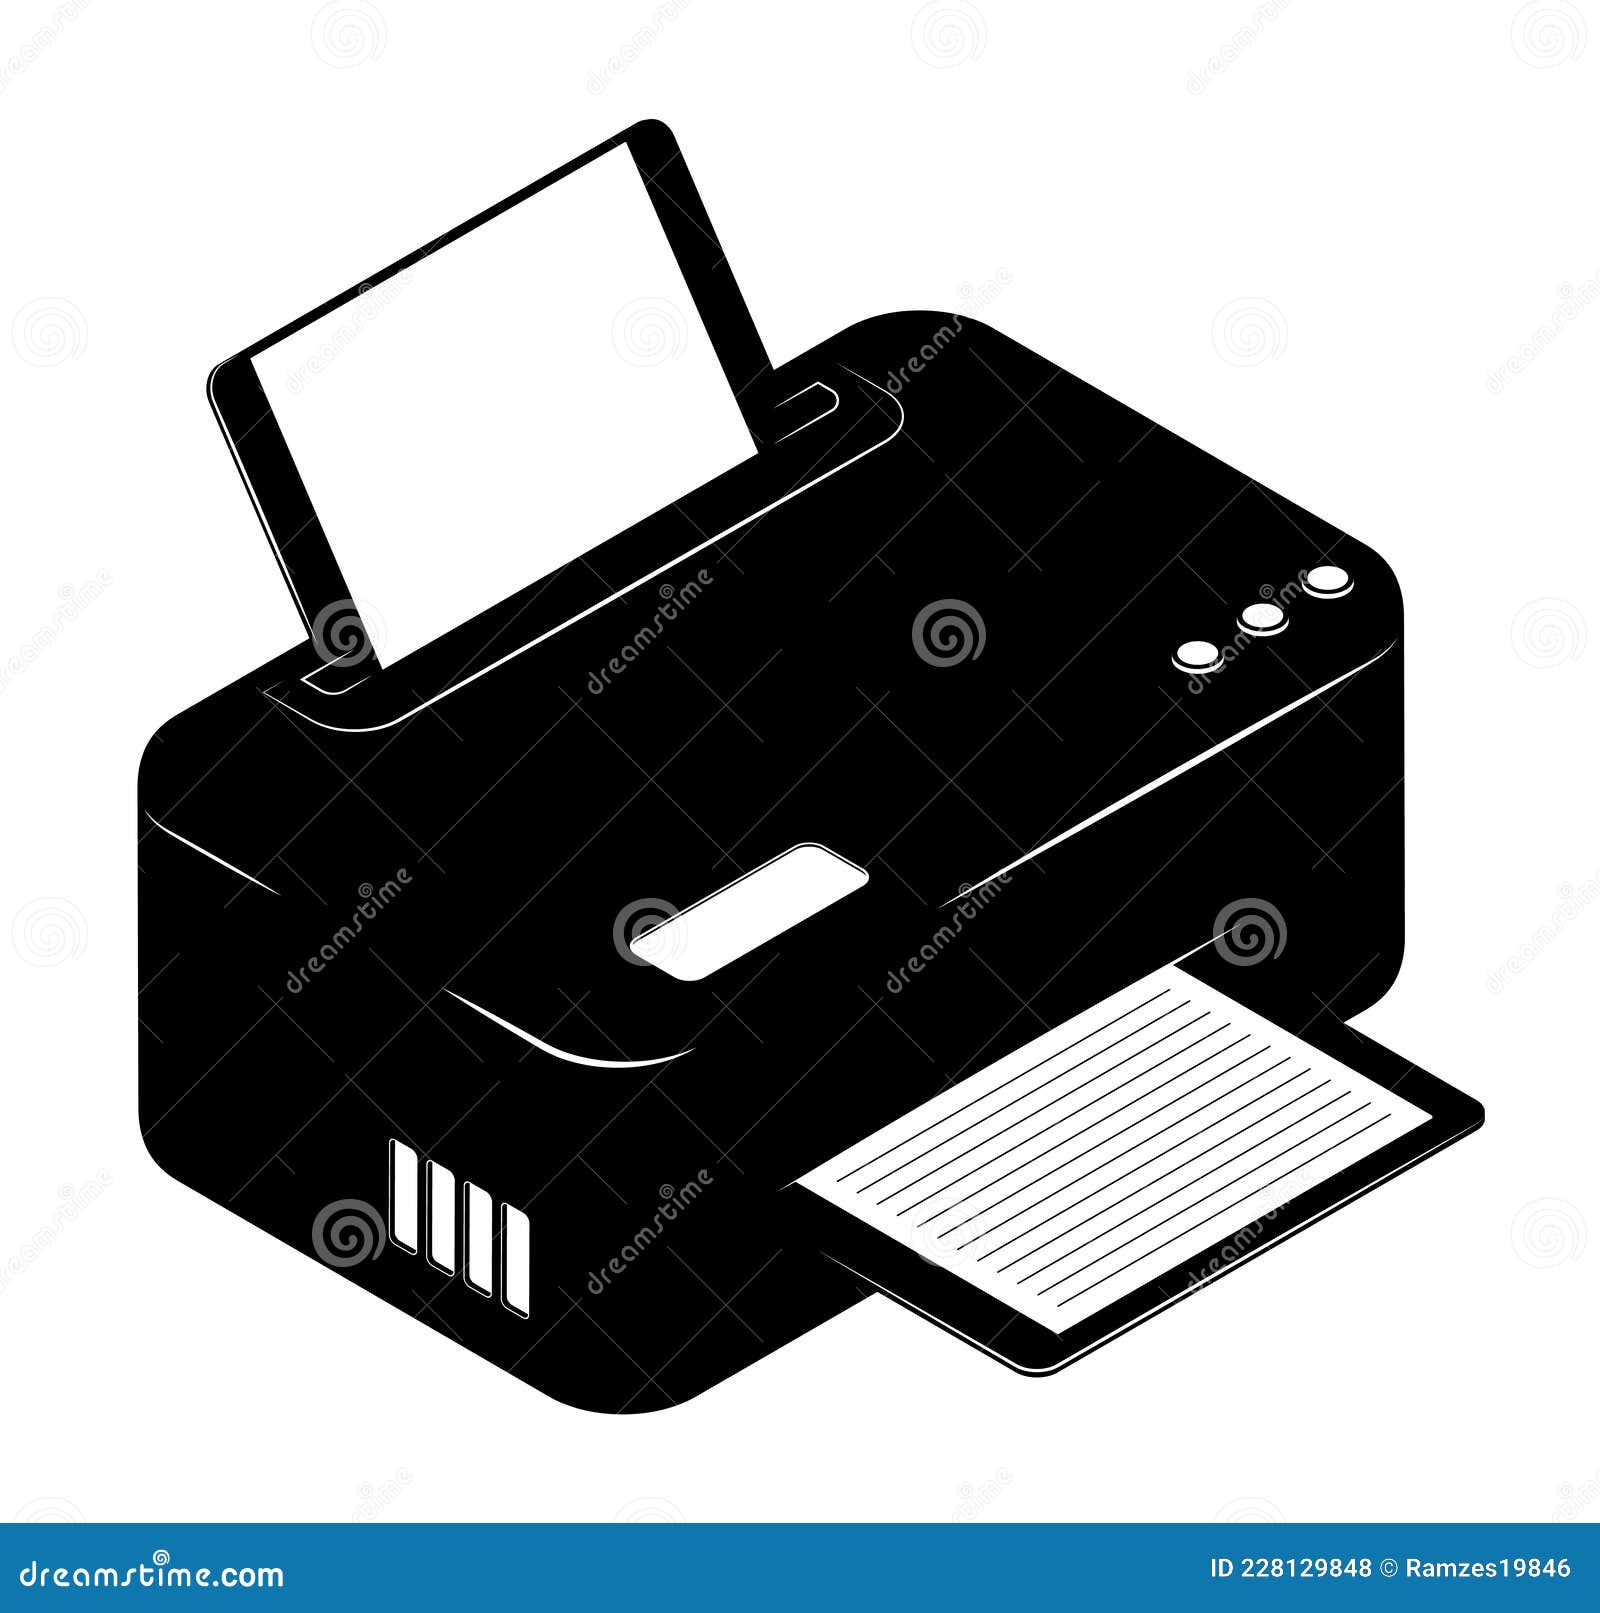 Impresora, Escáner, Copiadora Aislado En Fondo Blanco Fotos